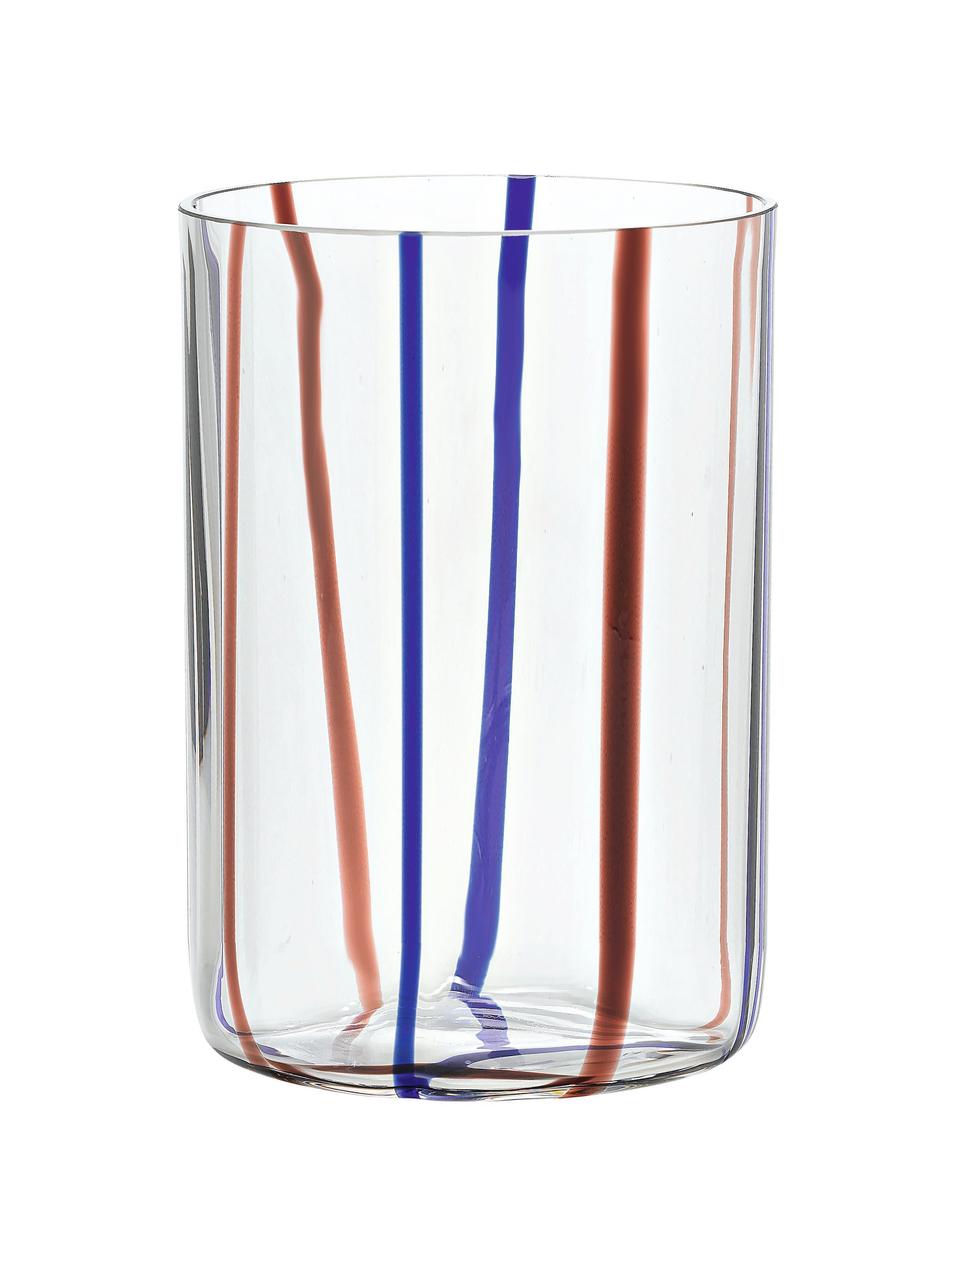 Sada ručně foukaných sklenic s barevnými proužky Tirache, 6 dílů, Sklo, Více barev, Ø 7 cm, V 10 cm, 350 ml